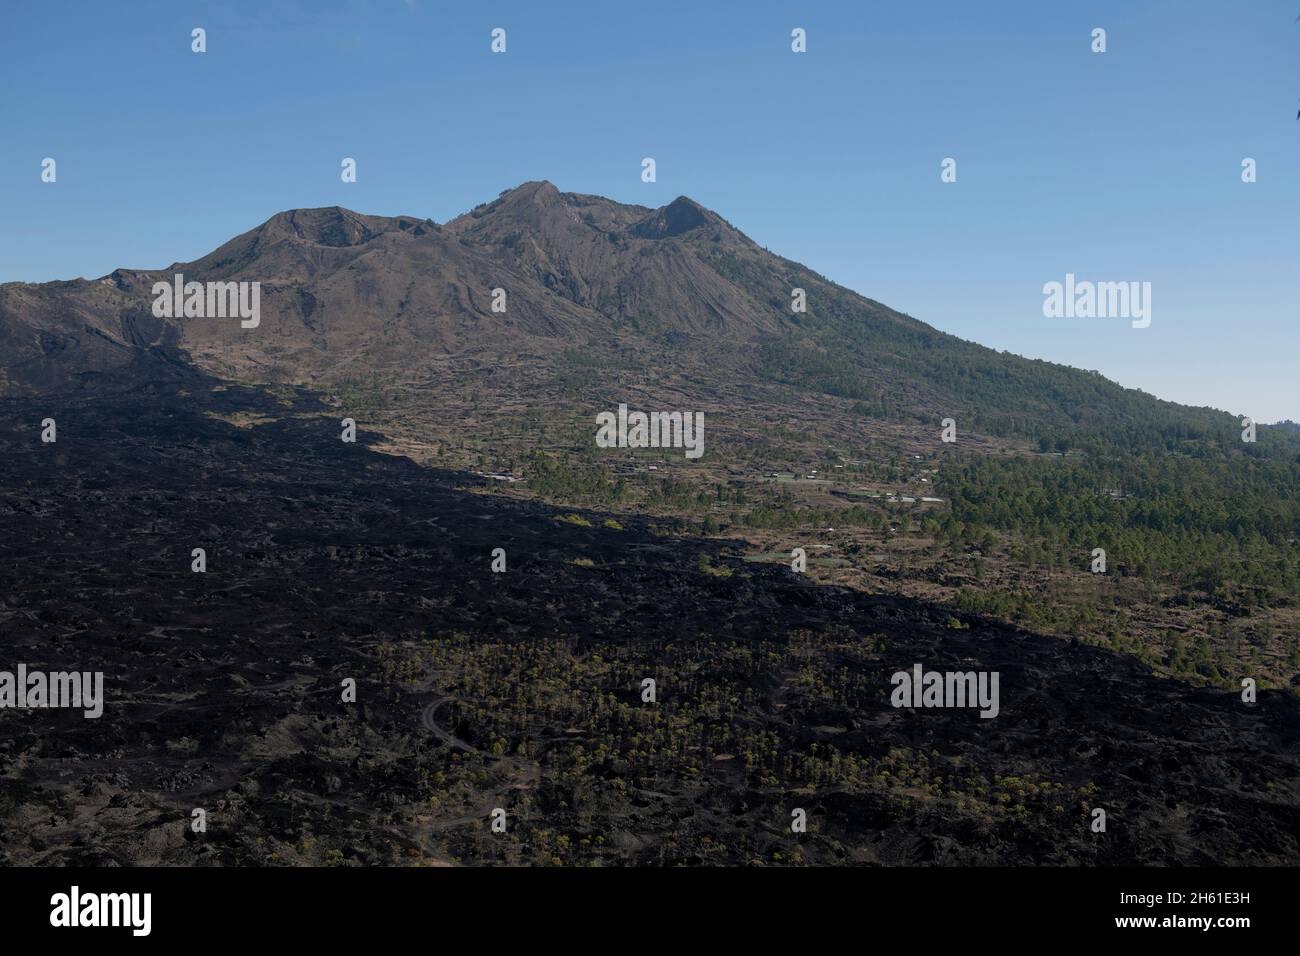 Ansicht von Kalderas und Lavastrom aus dem Jahr 1974, Mount Batur, Bangli Regency, Bali, Indonesien, Asien Stockfoto